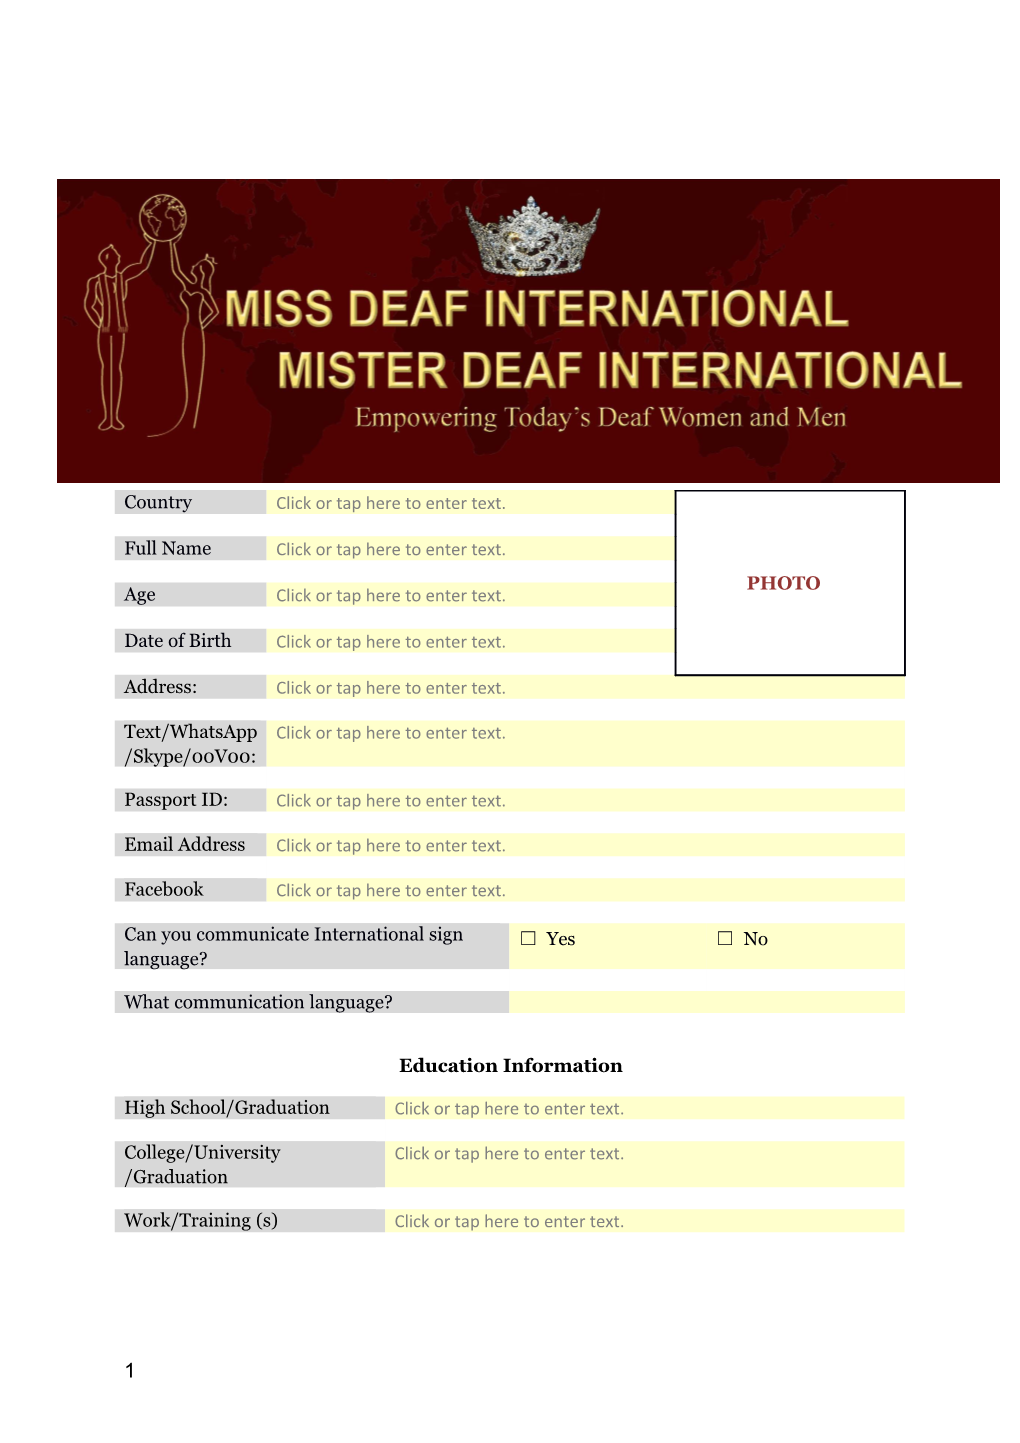 Mister Deaf Fashion Model 2018